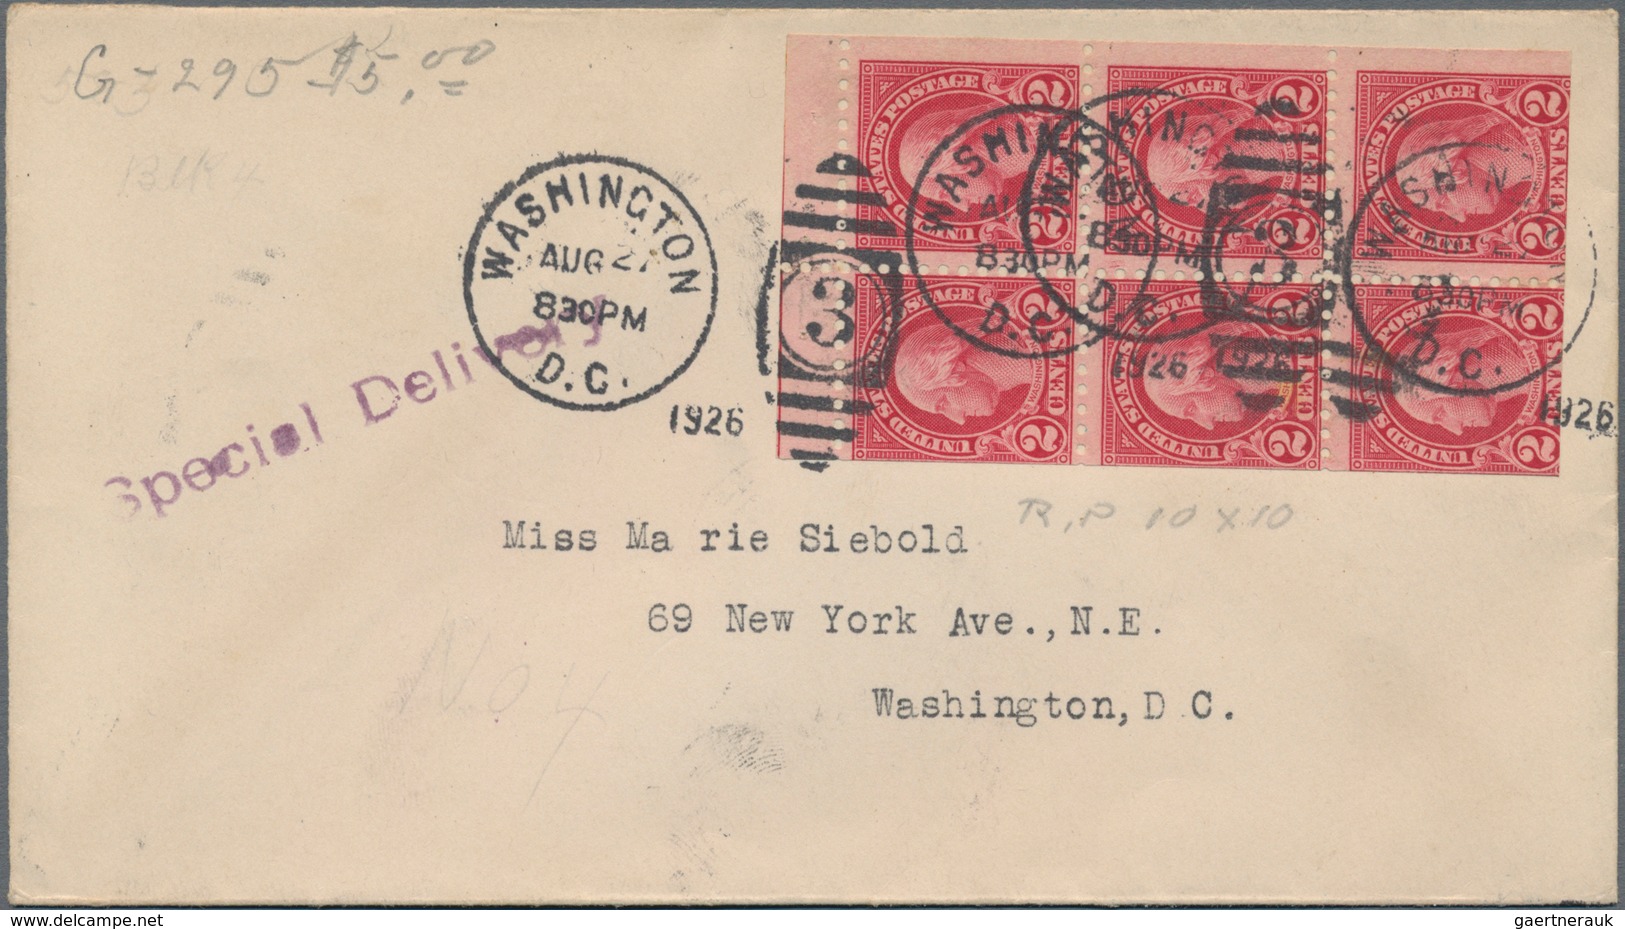 Vereinigte Staaten Von Amerika: 1926. 2c Washington Perf 10 Booklet Pane (Scott 583a) Tied By Four " - Gebruikt